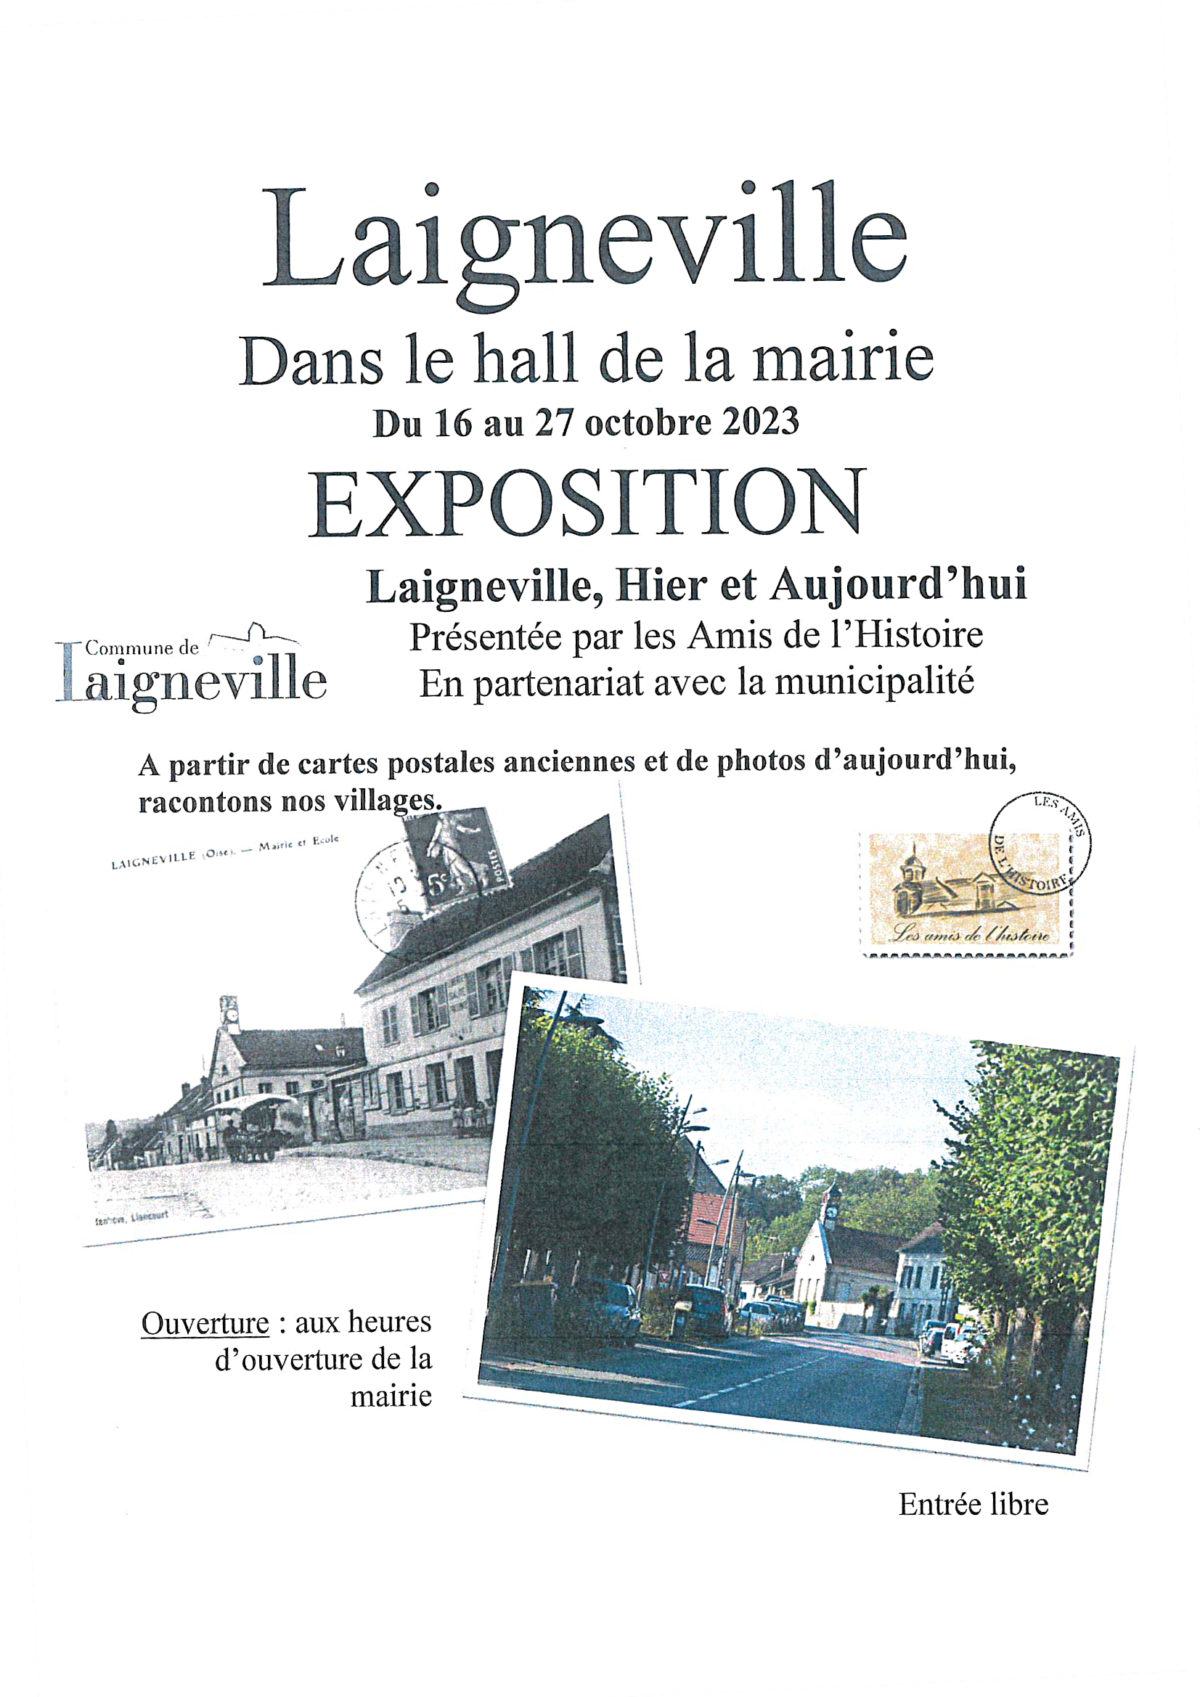 Exposition: Laigneville, Hier et Aujourd’hui